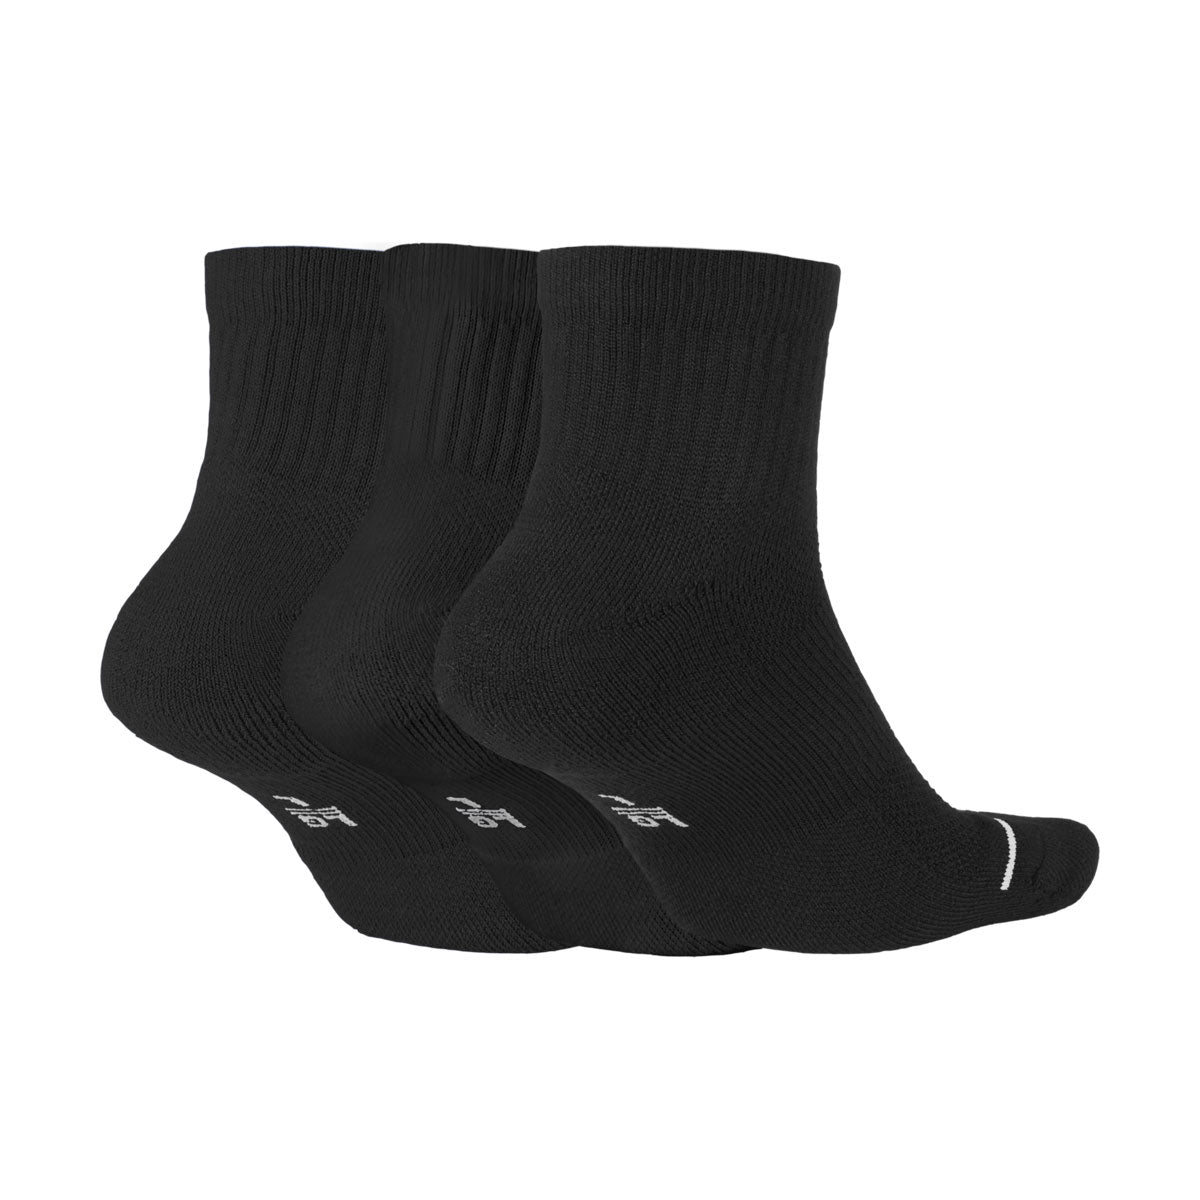 Jordan Men's Everyday Max Ankles 3 Pairs Socks